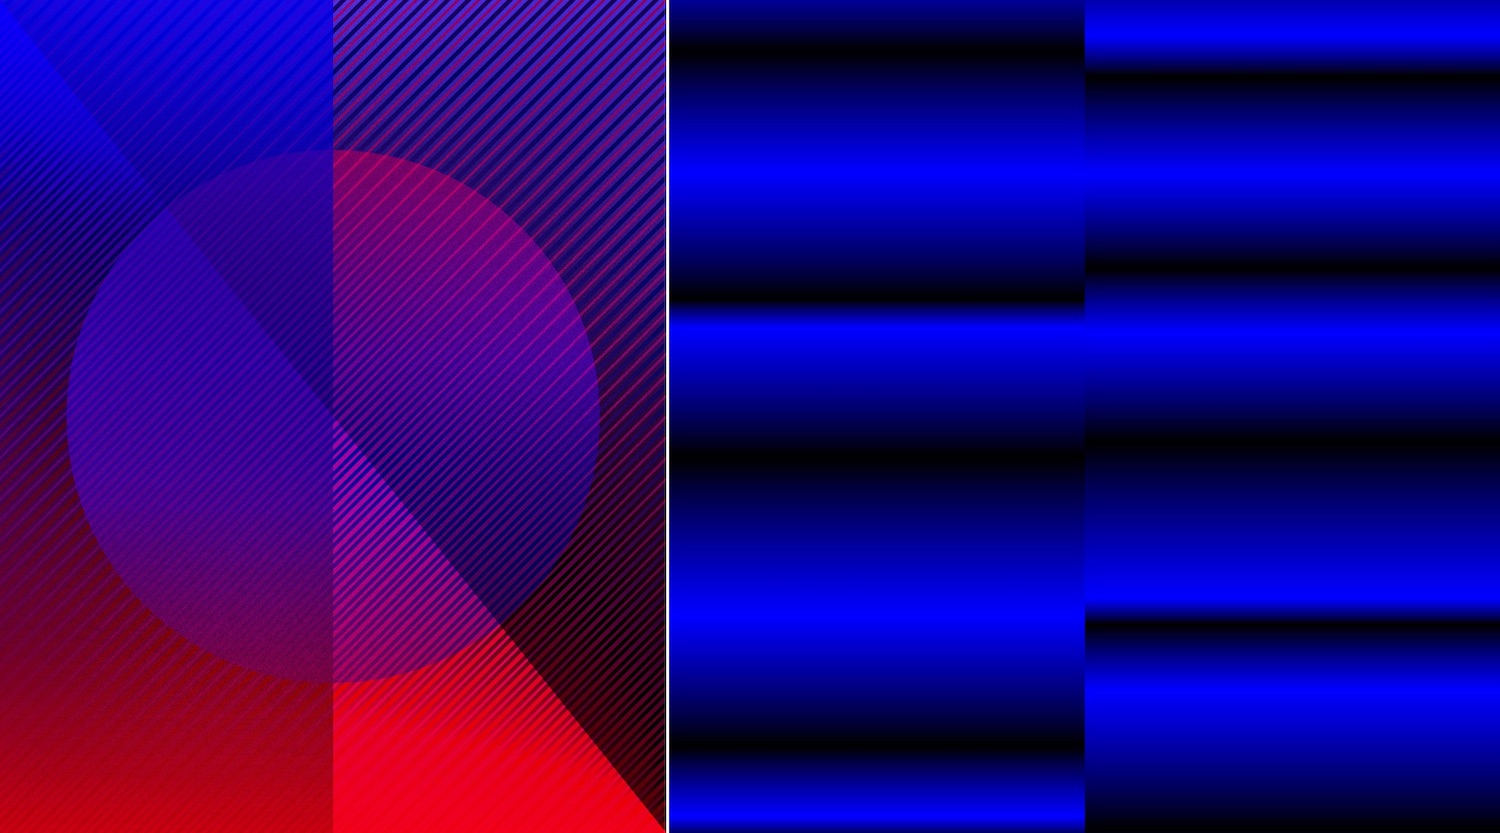 Links eine grafische Arbeit in Rot und Blau von Jonas Lund, rechts eine grafische Arbeit in Blau und Schwarz von Rafael Rozendaal.